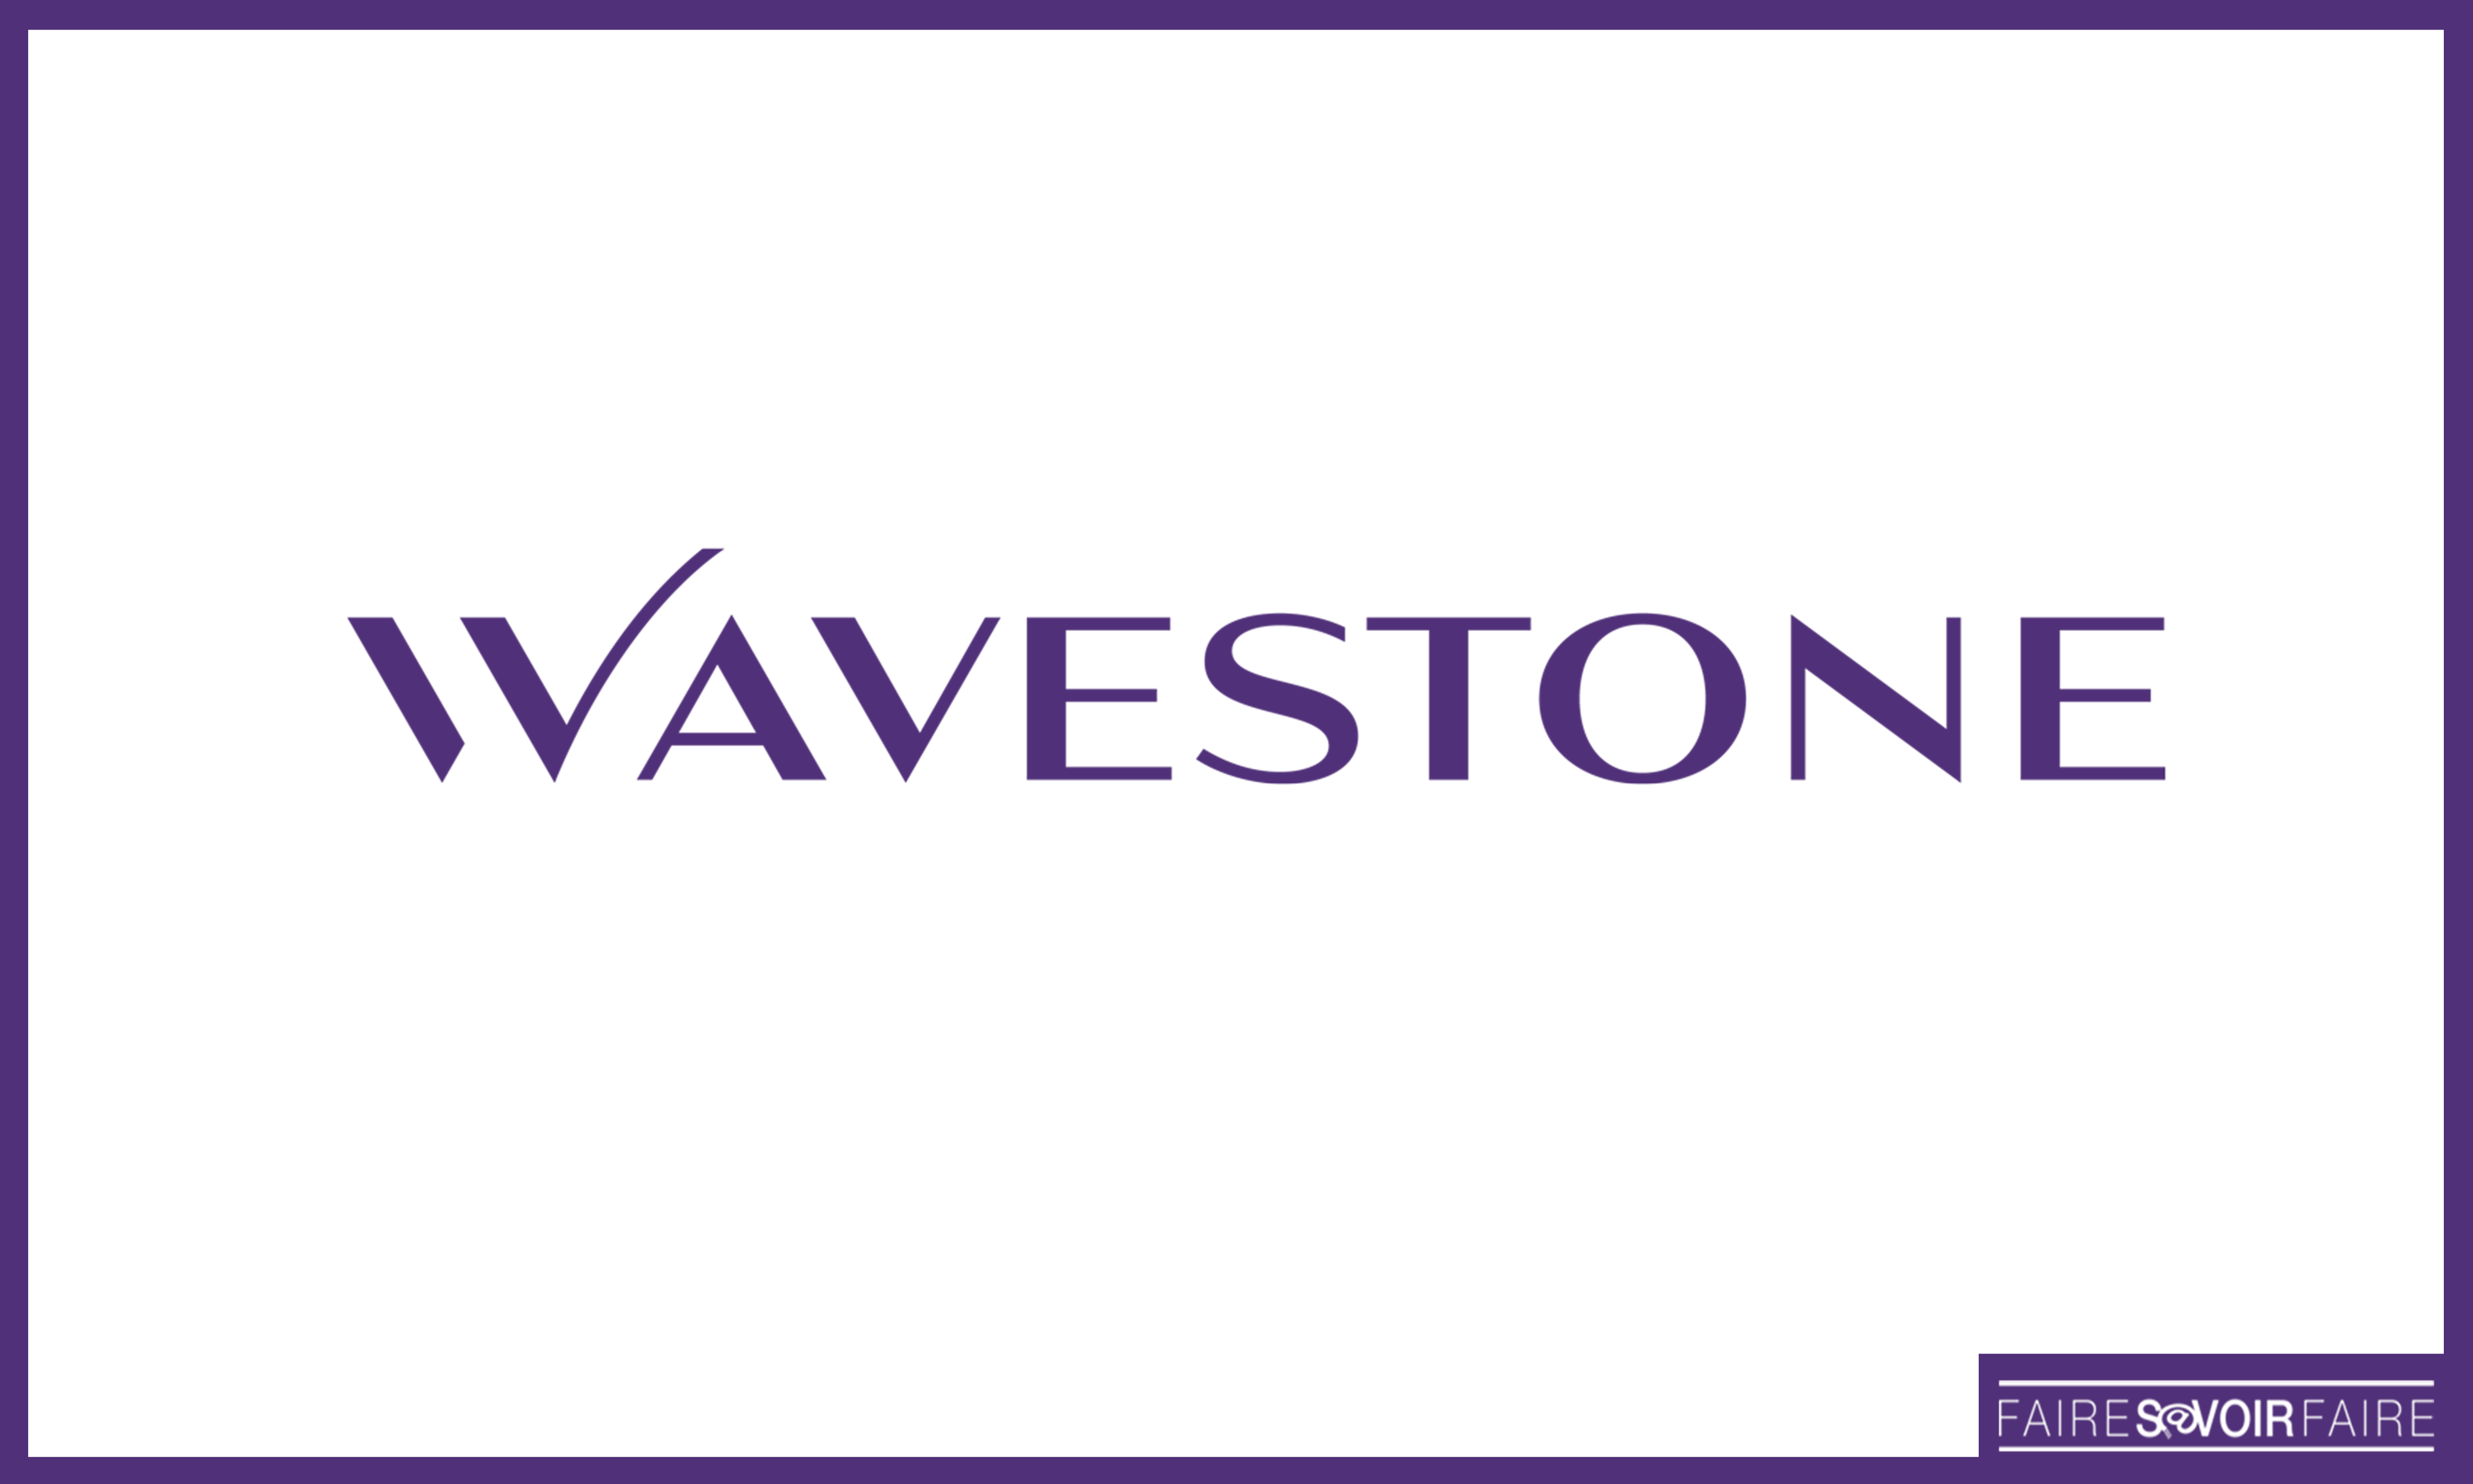 Wavestone publie le bilan de son baromètre des nouvelles tendances de consommation